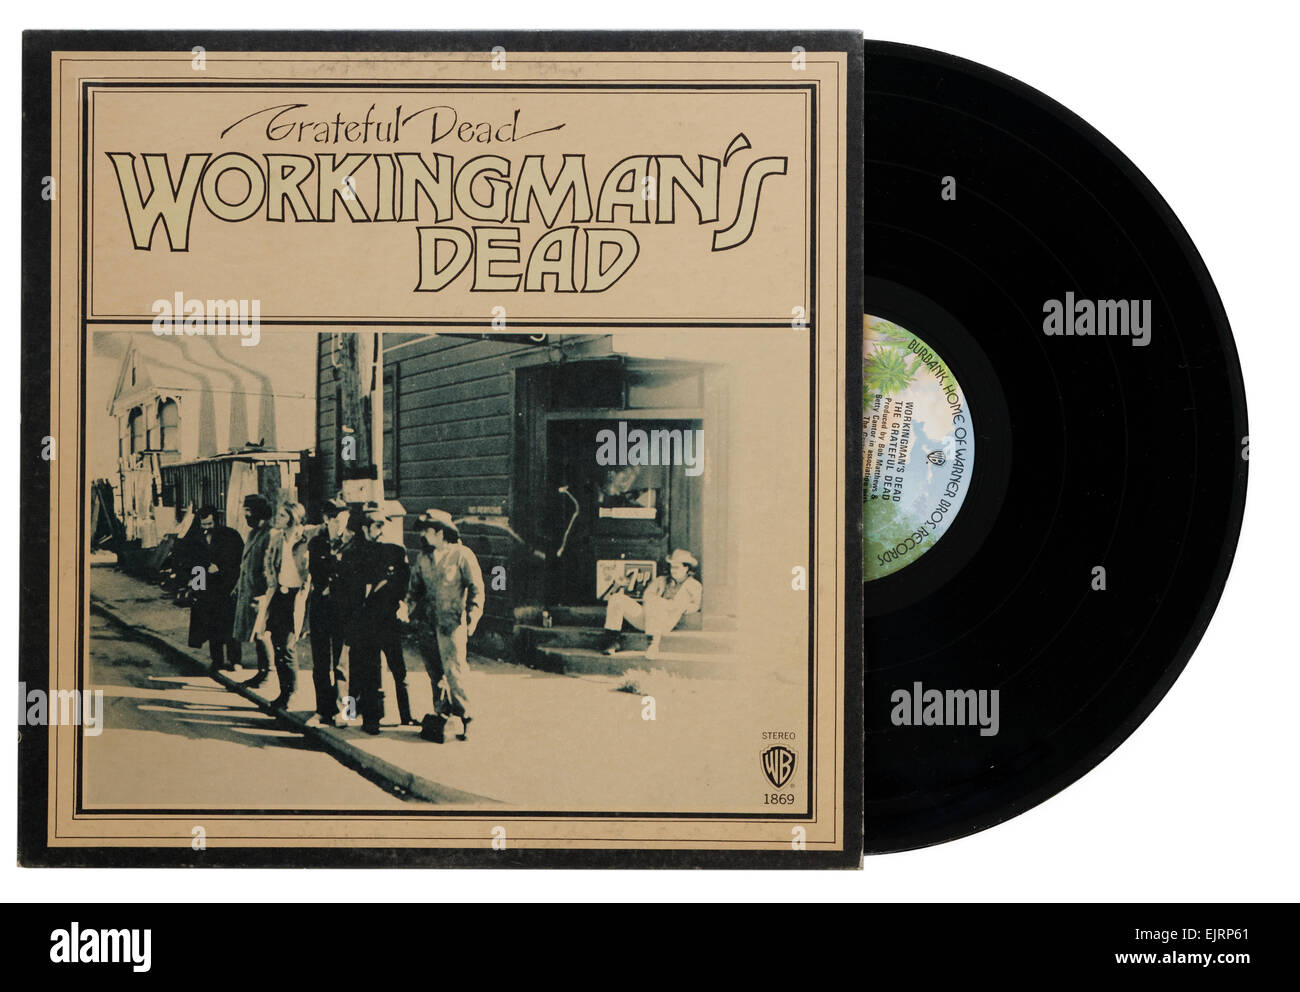 Grateful Dead Workingman's Dead album Stock Photo